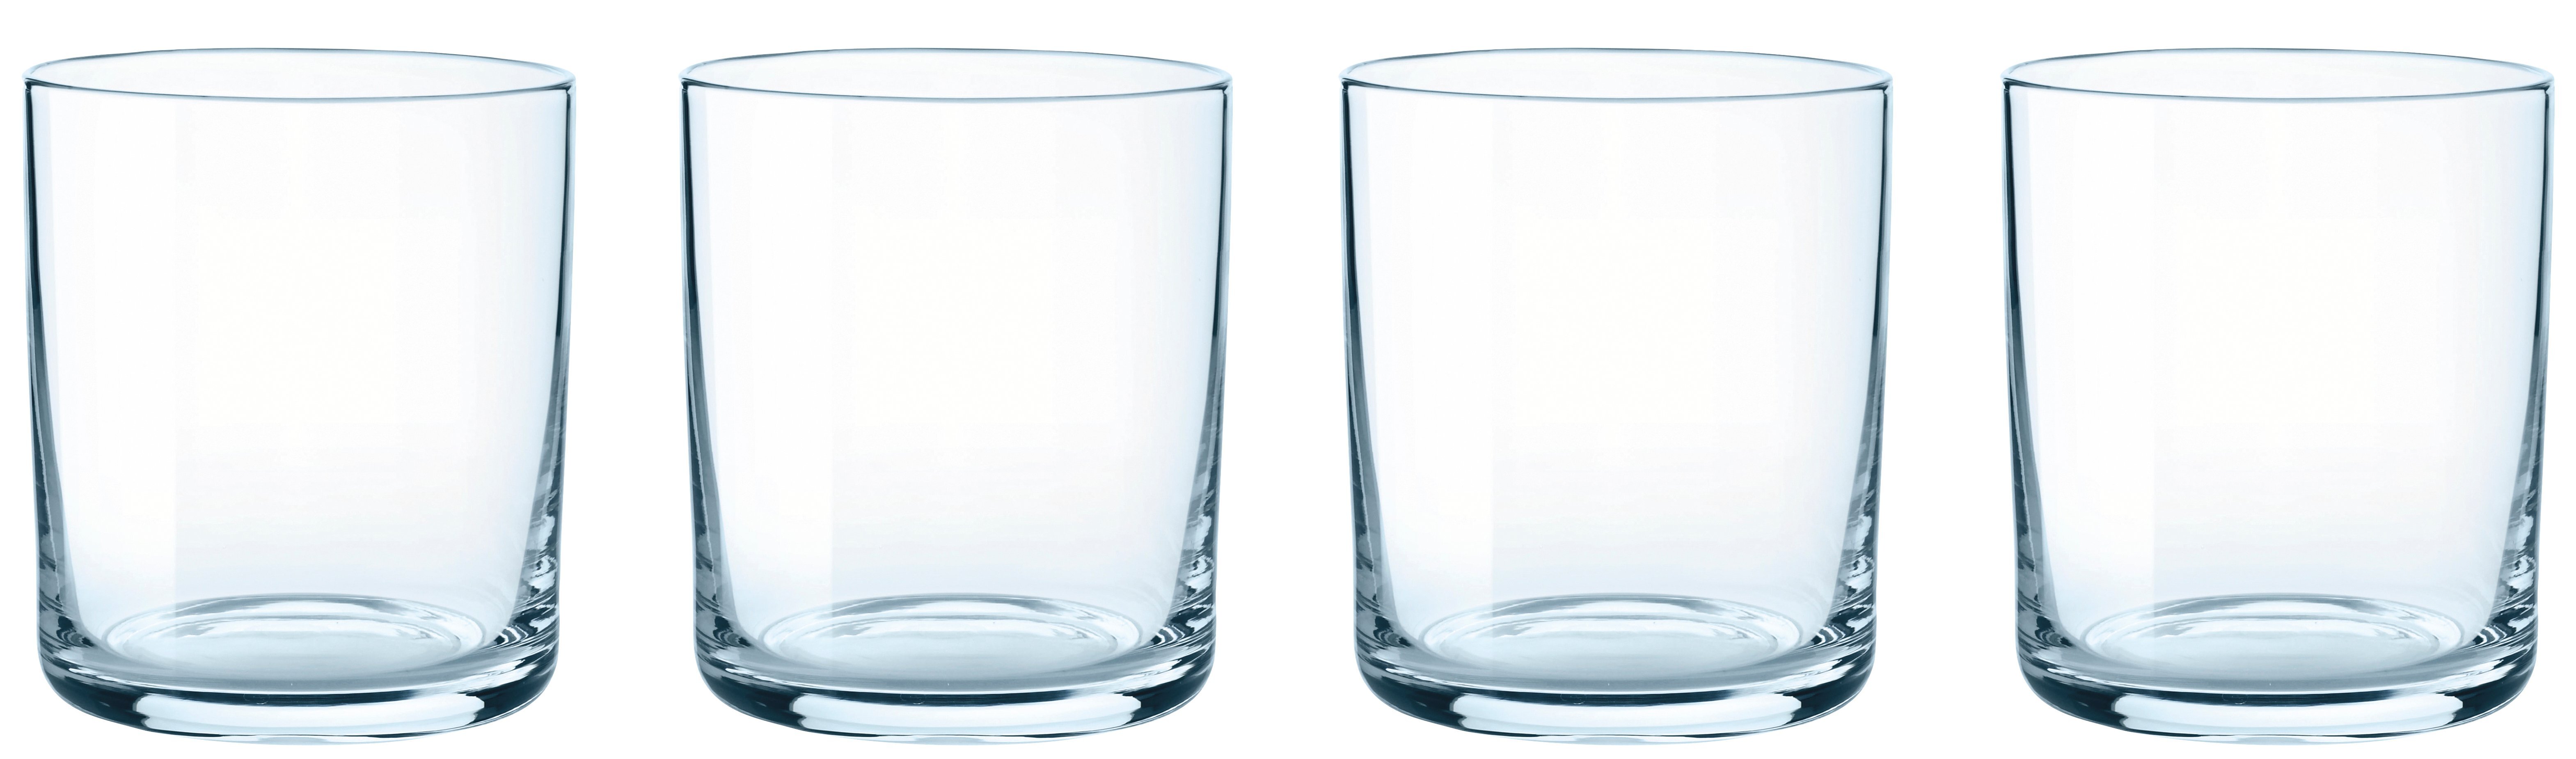 Stelton Simply waterglas - set van 4